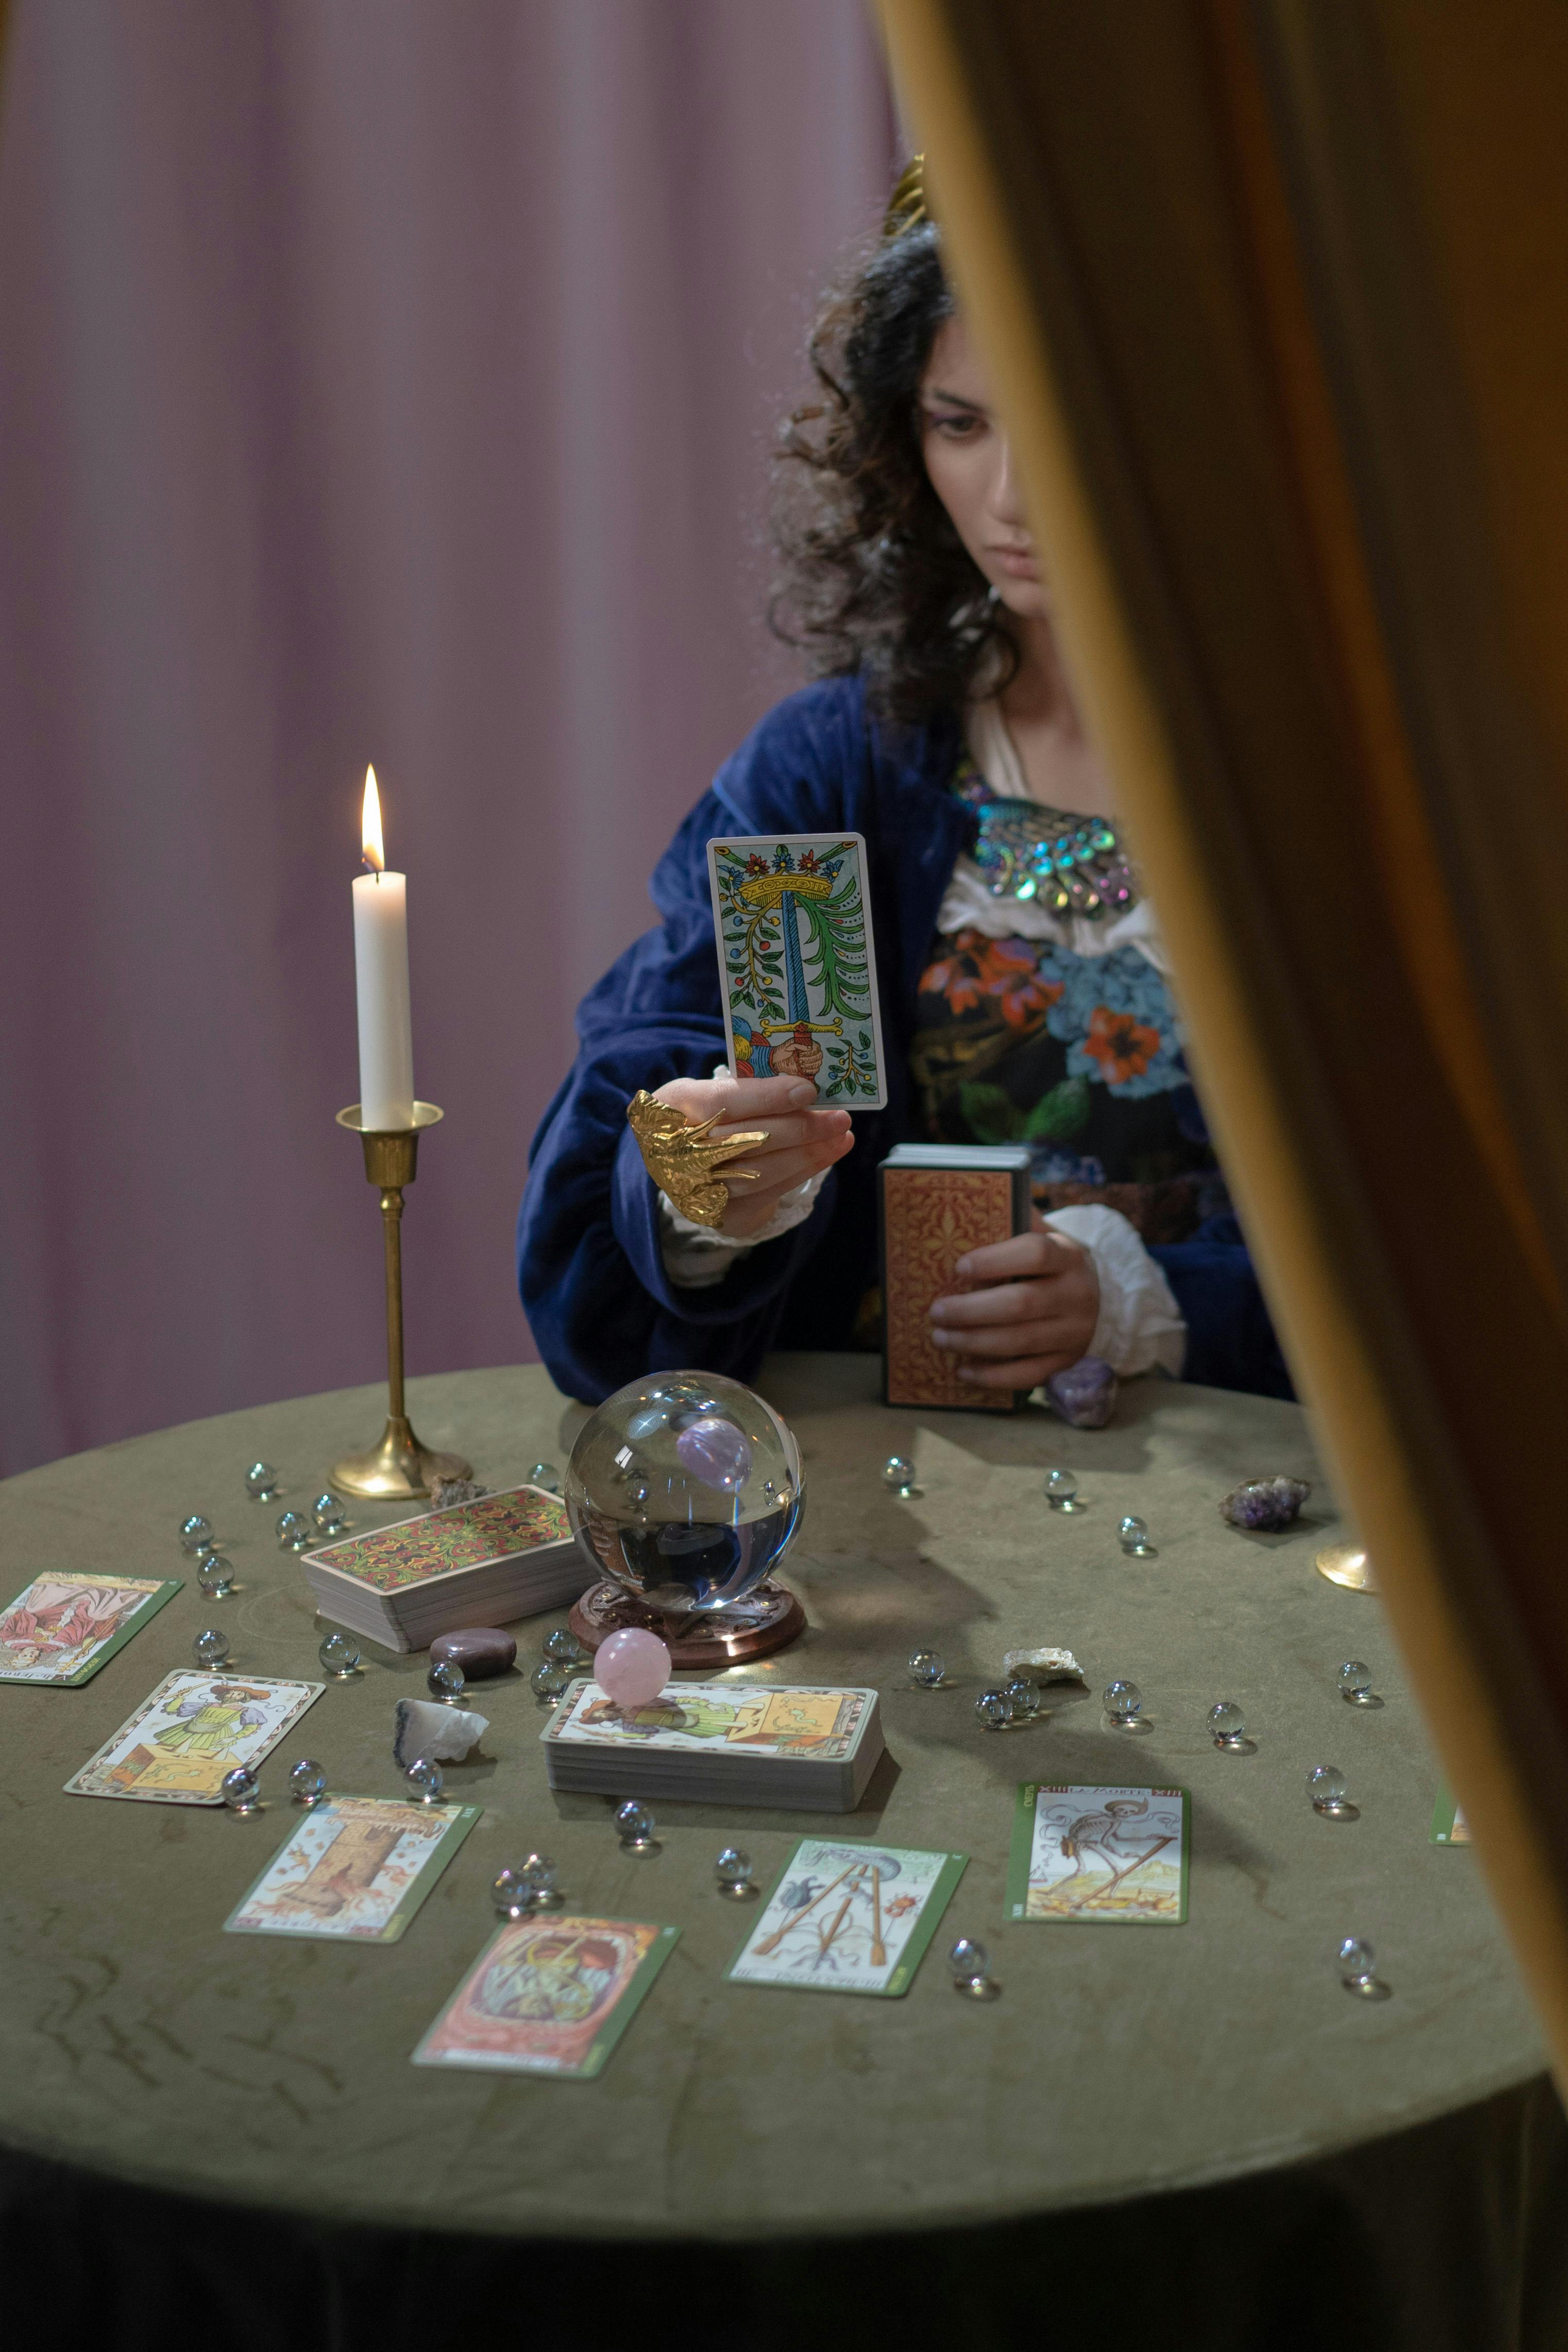 Une cartomancienne lisant une carte de tarot | Source : Pexels